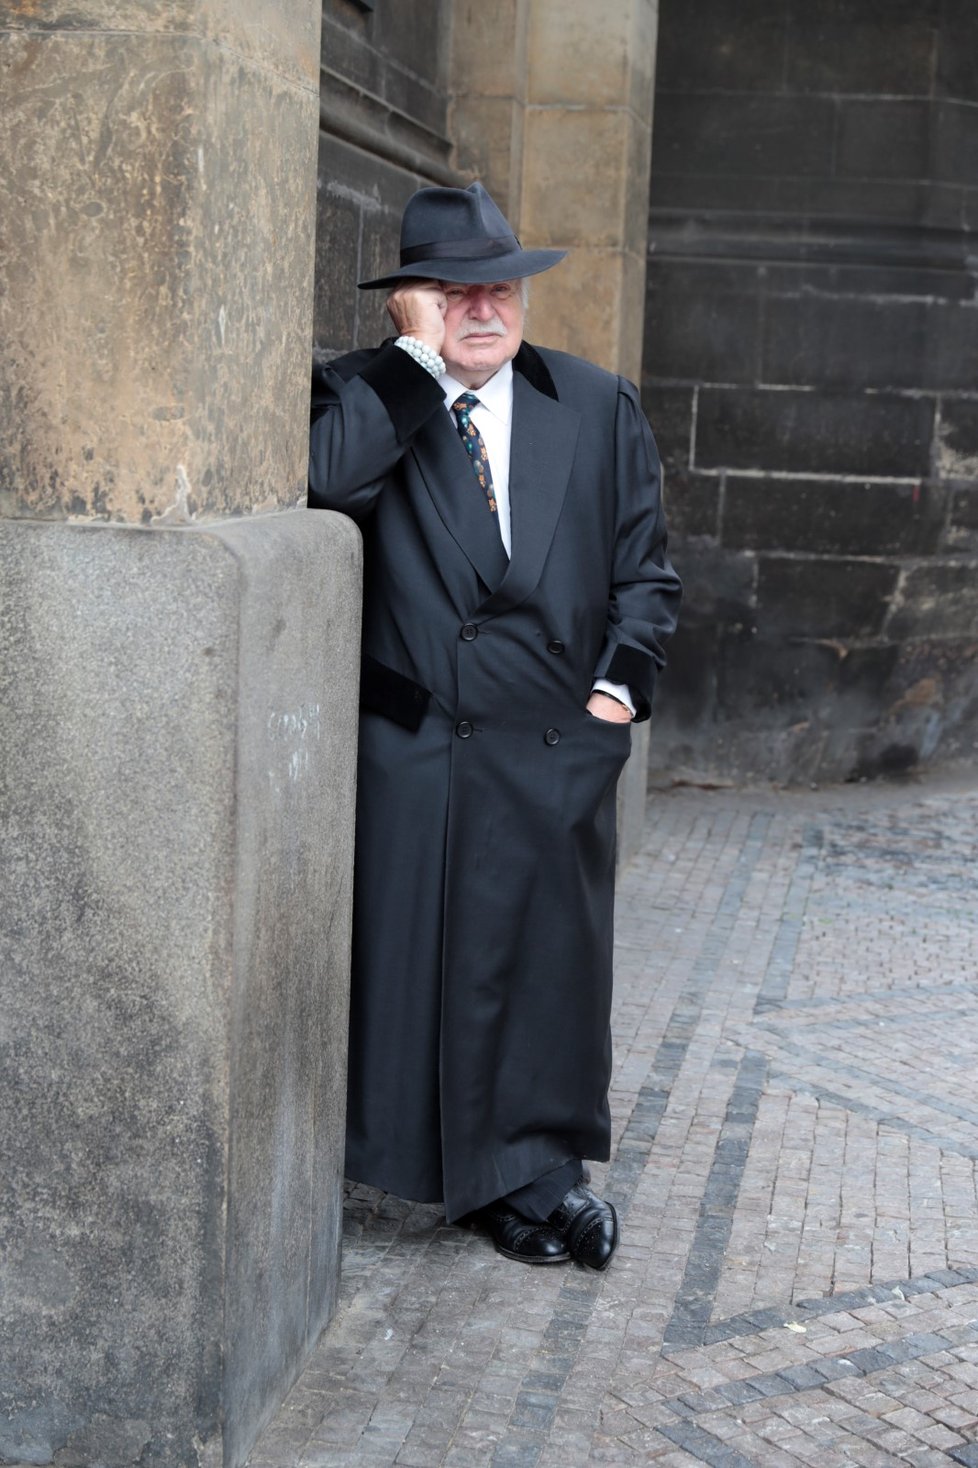 Bývalý prezident Václav Klaus si připomněl vznik samostatného Československa u Obecního domu v Praze. Na rozdíl od svých spolupracovníků si sundal roušku (28. 10. 2020)